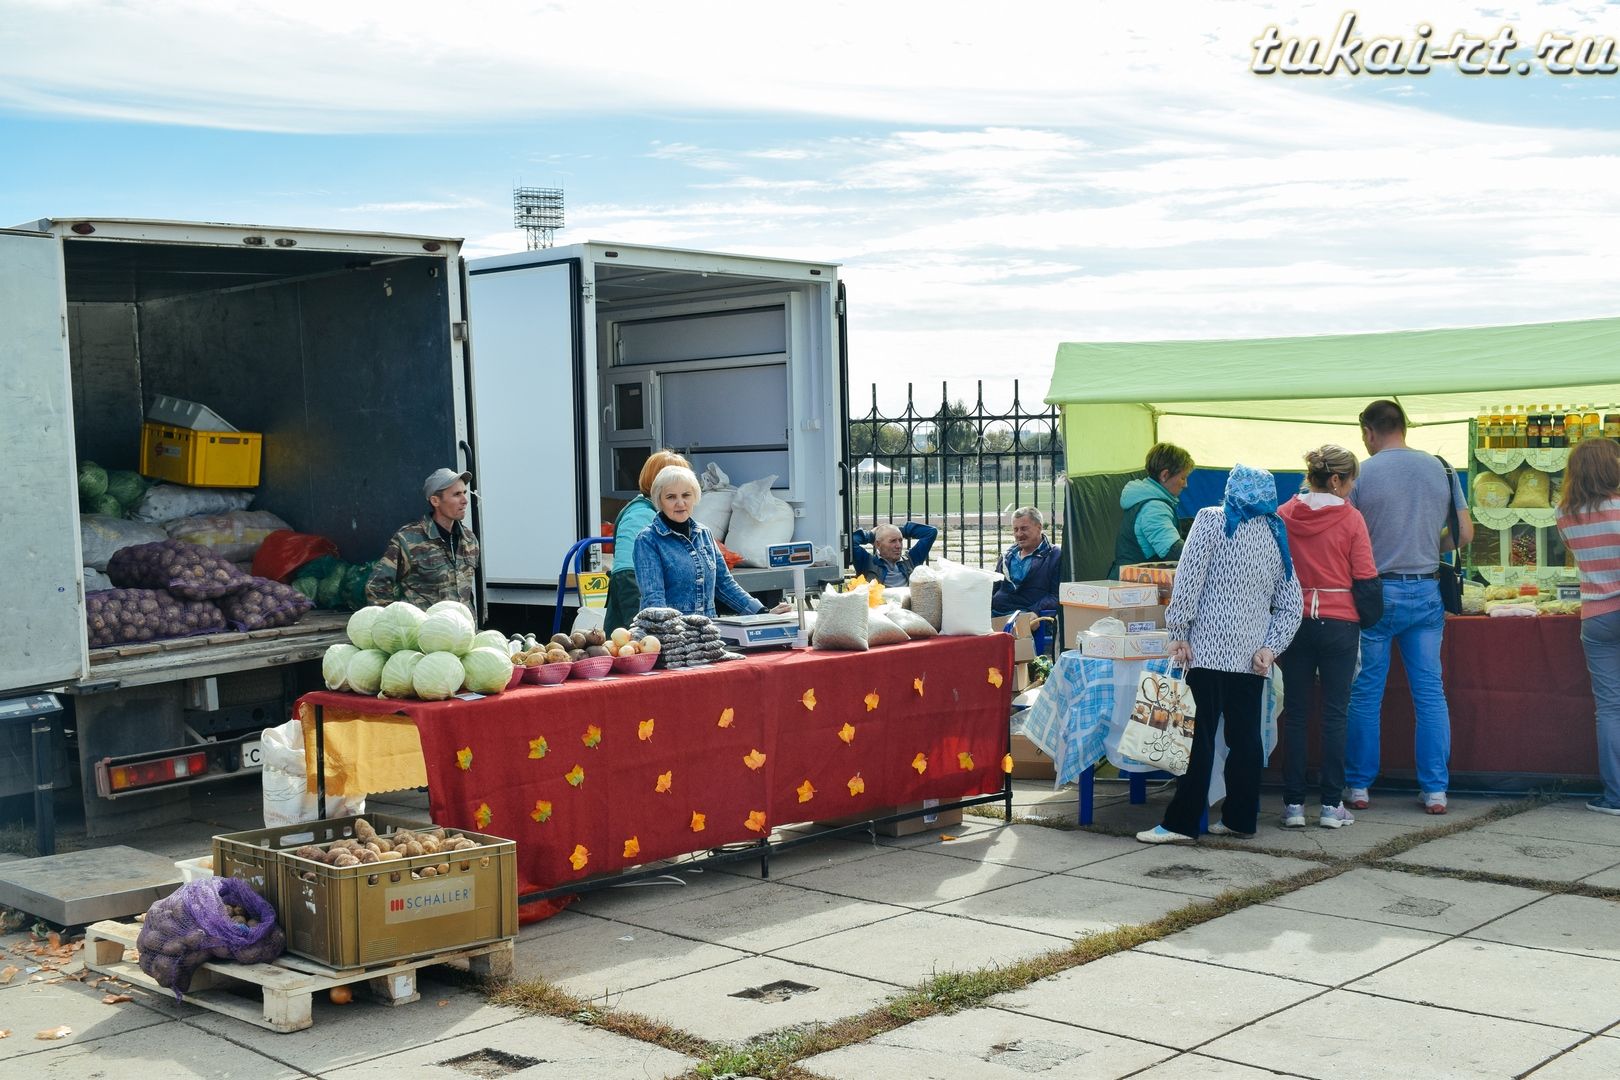 Тукаевцы представили свою продукцию на сельскохозяйственной ярмарке ФОТО